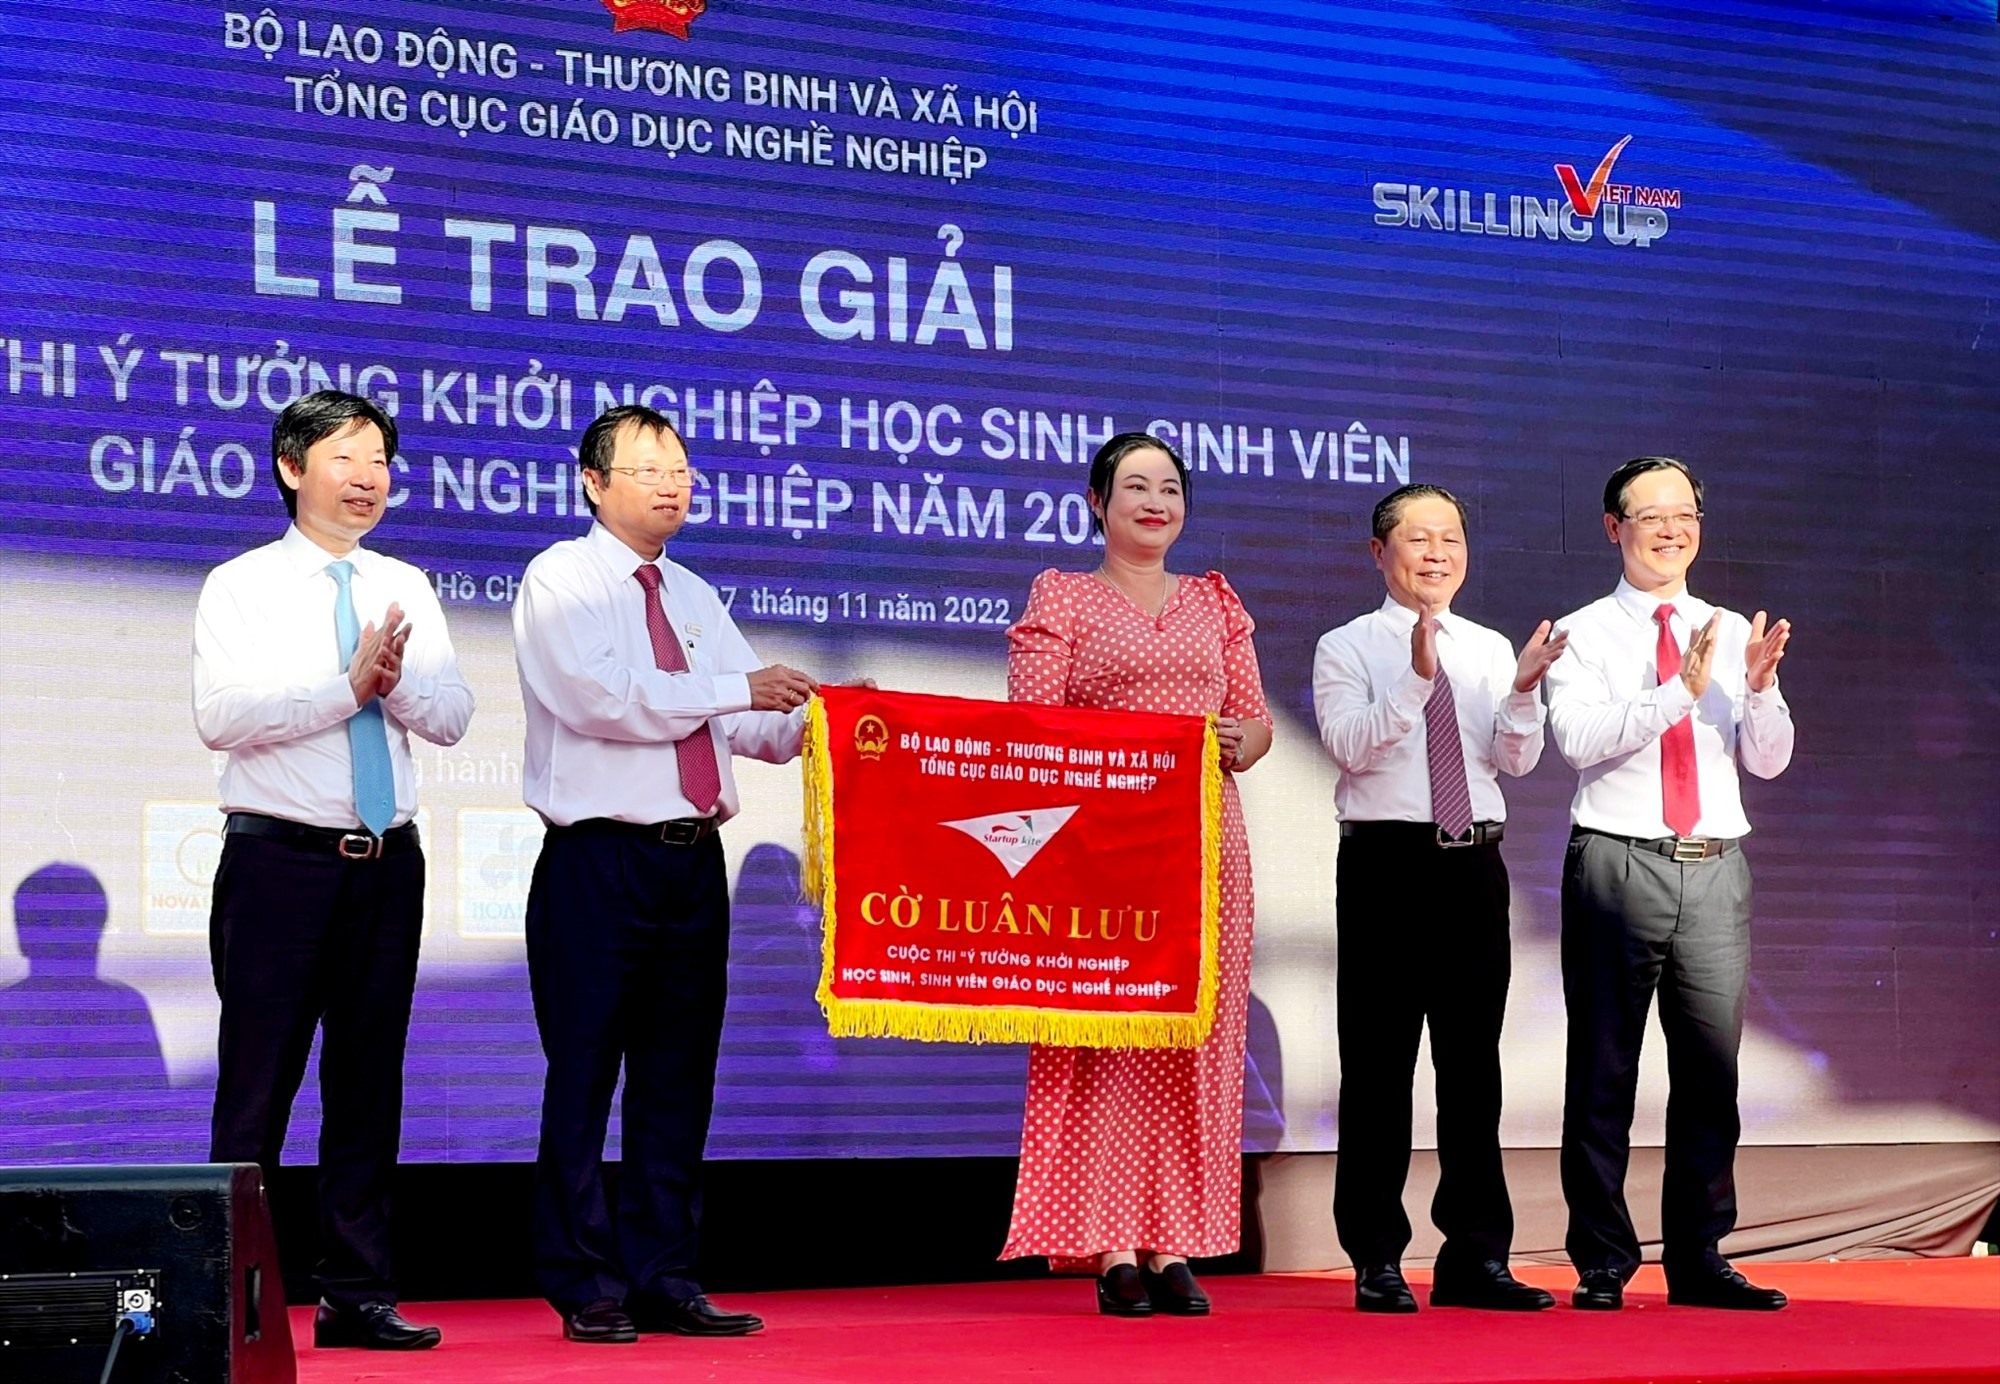 Trường CĐ Quảng Nam đăng cai tổ chức cuộc thi Ý tưởng khởi nghiệp học sinh, sinh viên giáo dục nghề nghiệp 2023